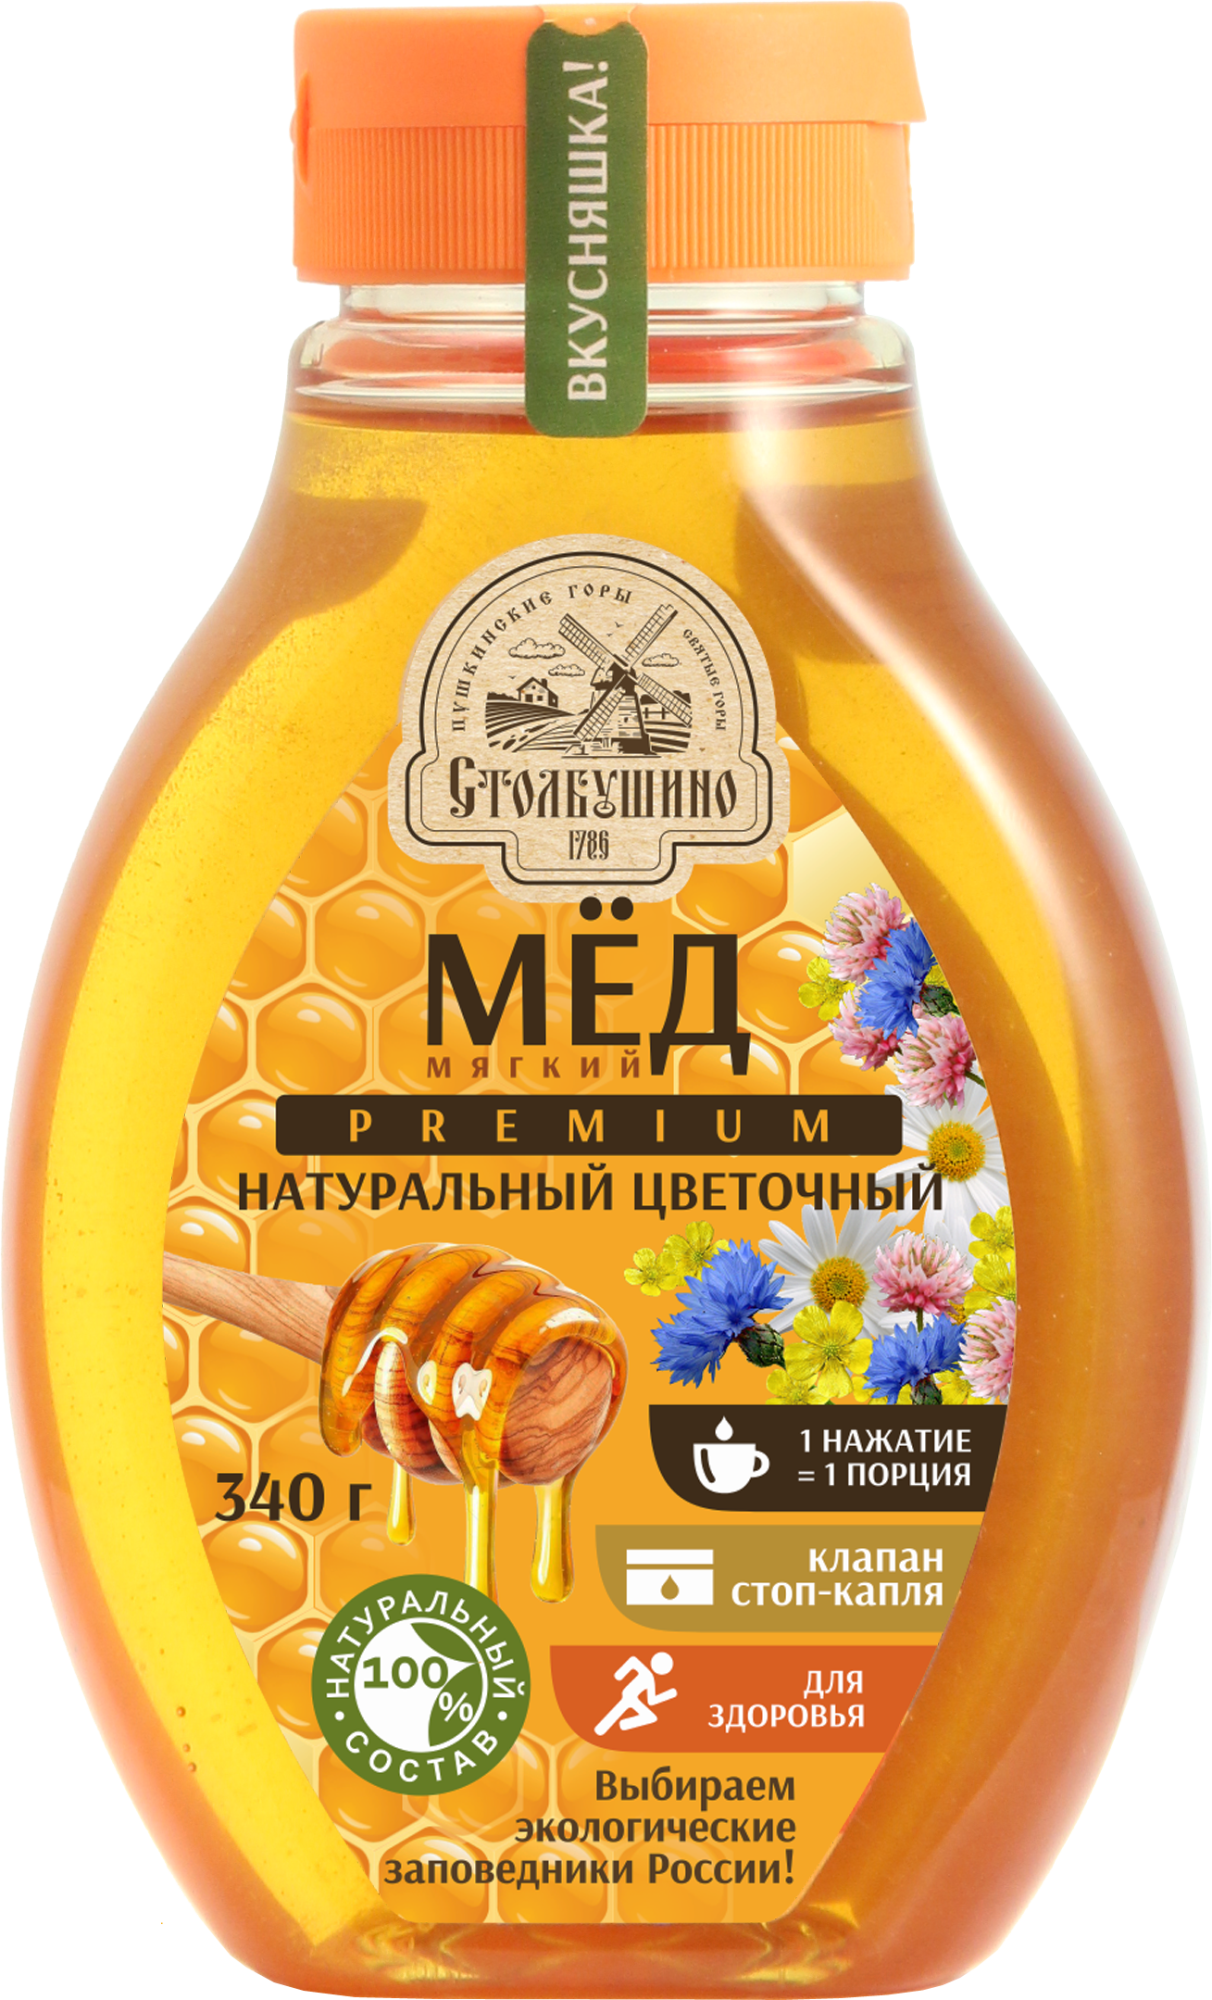 Weicher natürlicher Blütenhonig Polyflour-Honig, 340 g